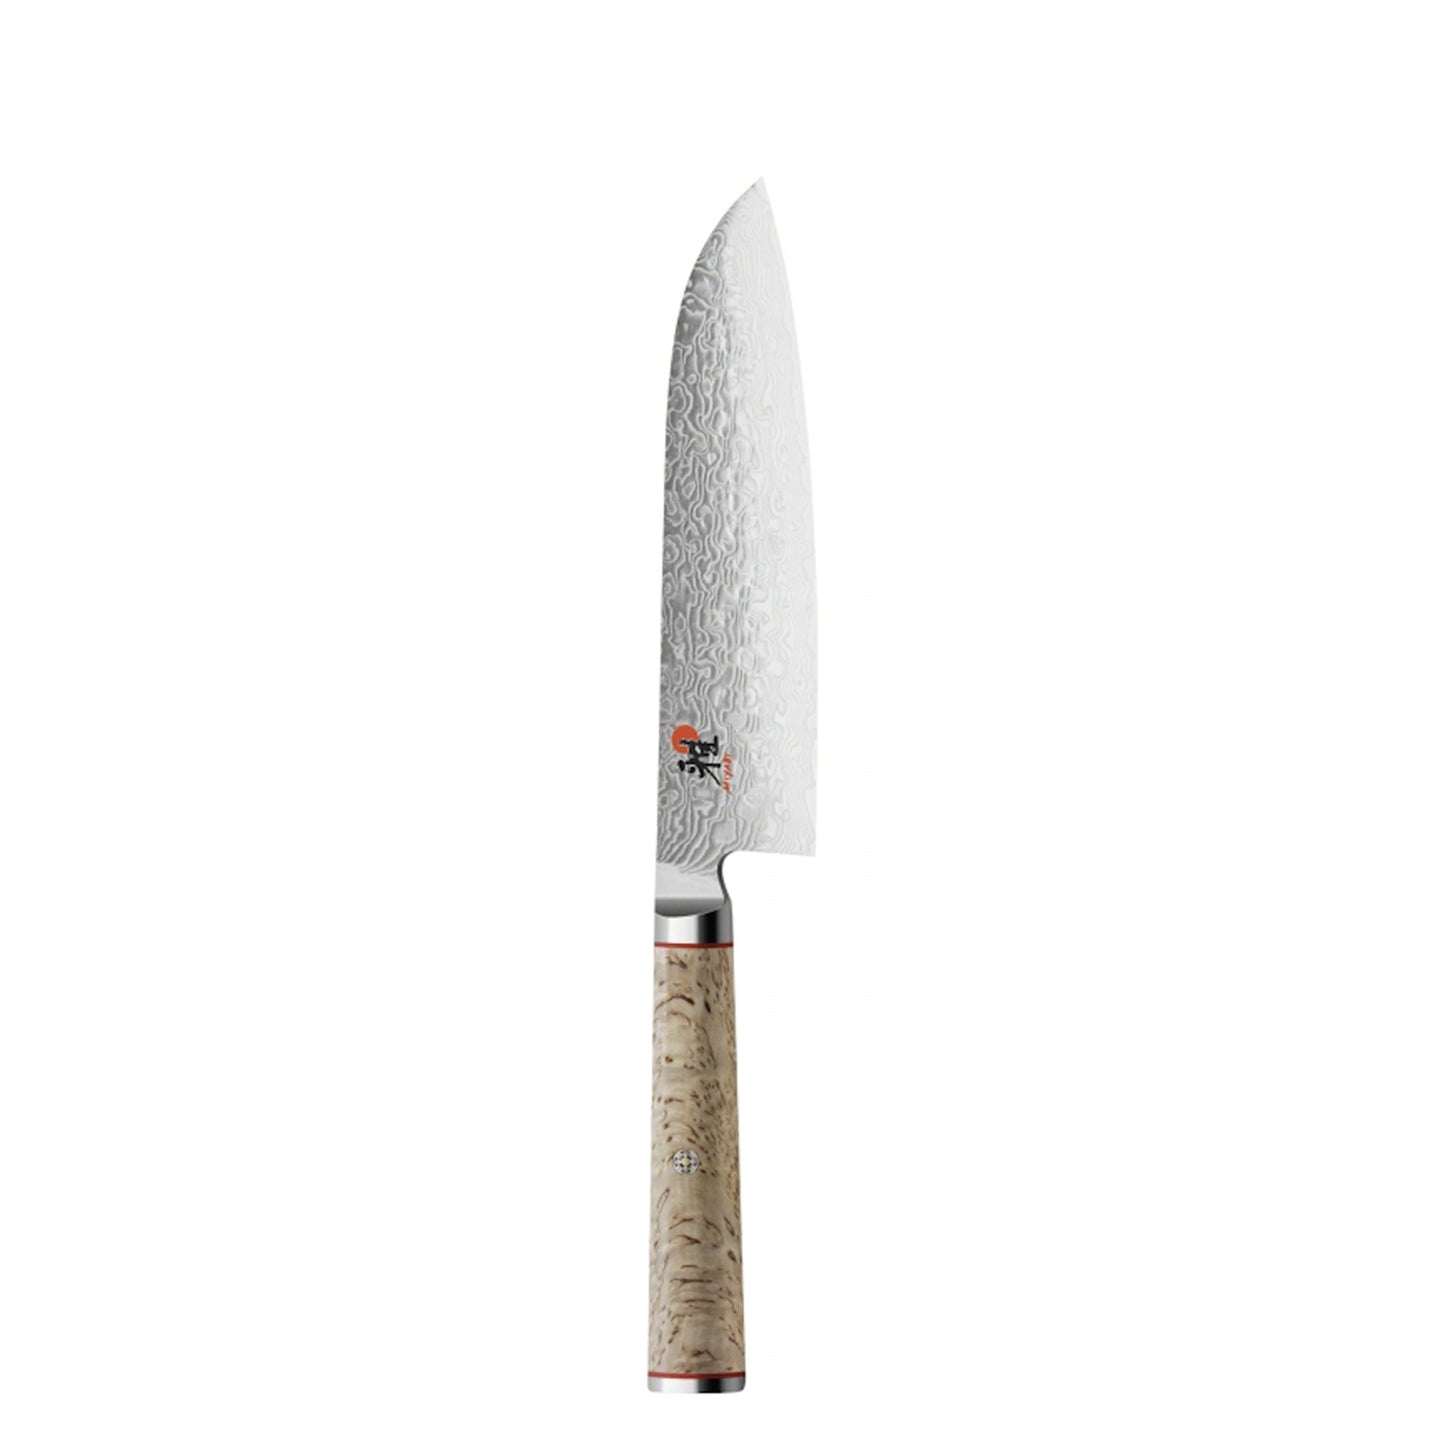 Miyabi 5000 MCD 10 Knife and Kai Block Set / Oak Block